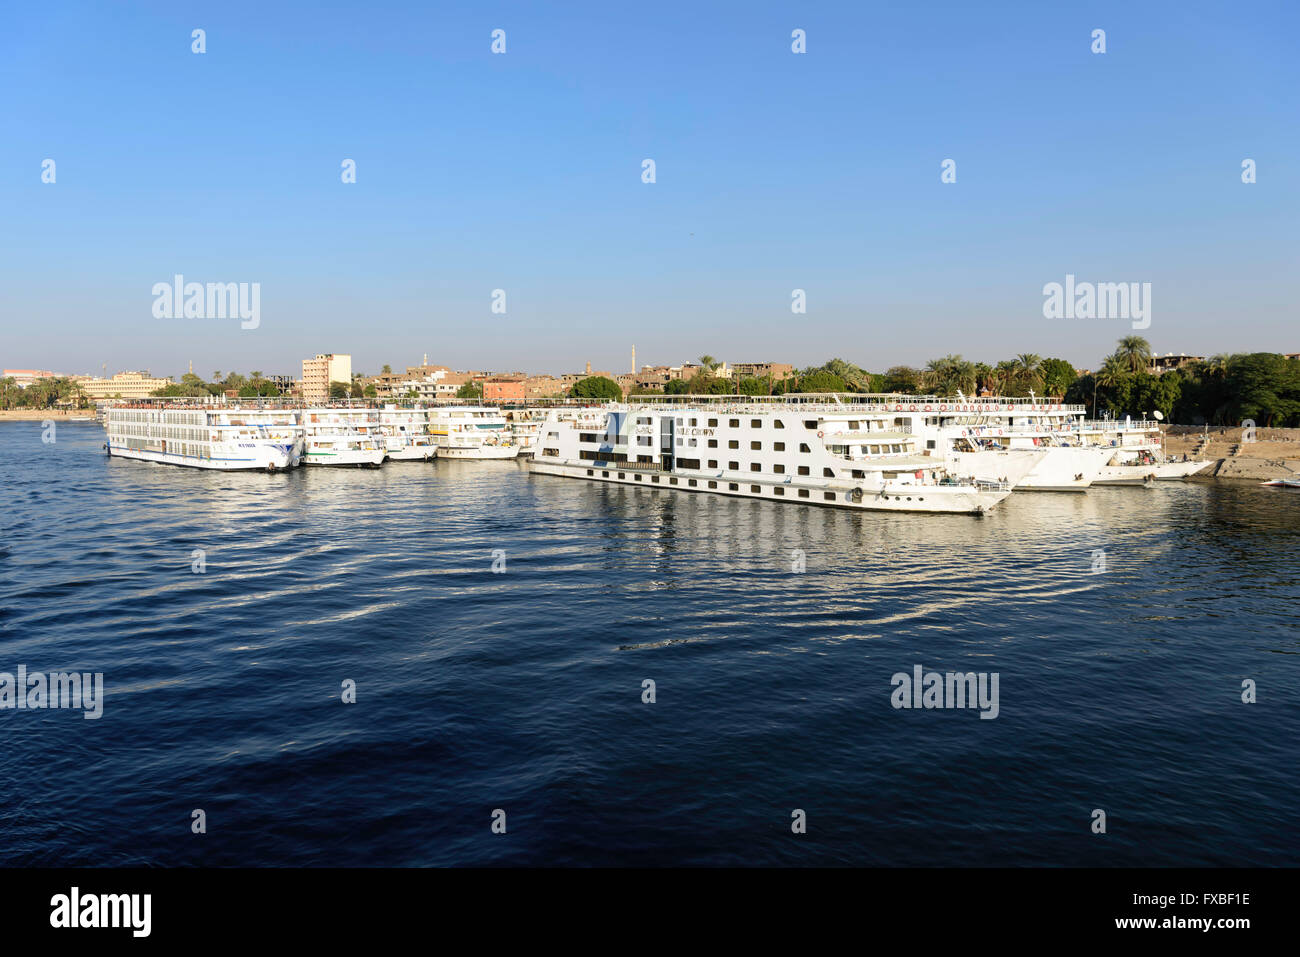 Fluss Nil Kreuzfahrt Boote außer Betrieb seit der Revolution und der Rückgang des Tourismus in Ägypten Stockfoto